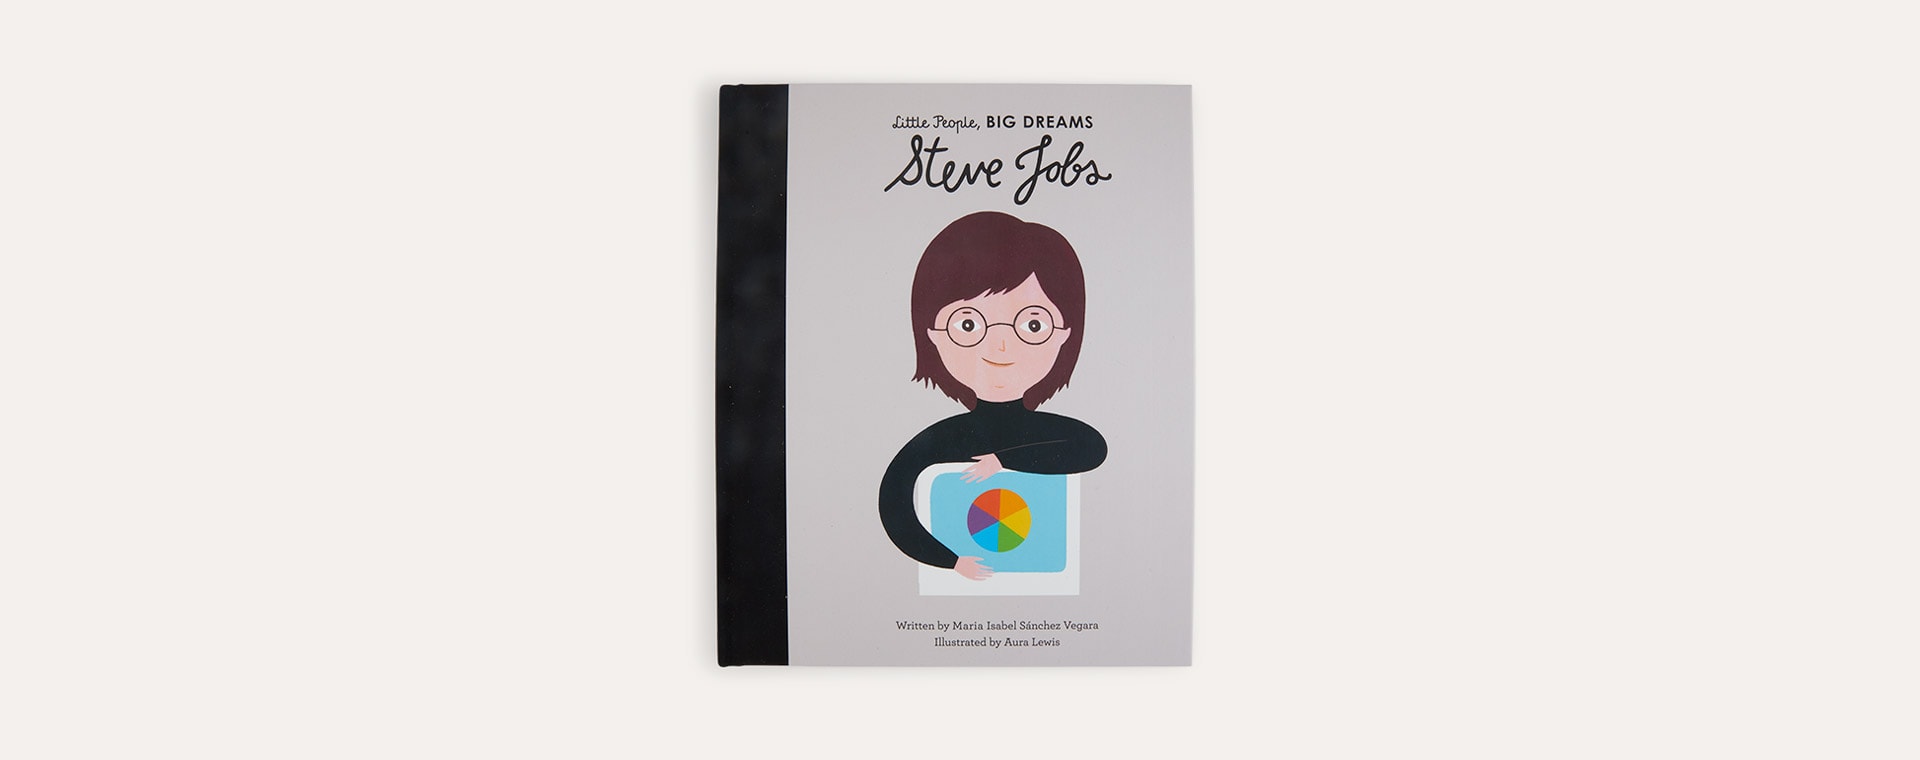 Multi bookspeed Little People Big Dreams: Steve Jobs